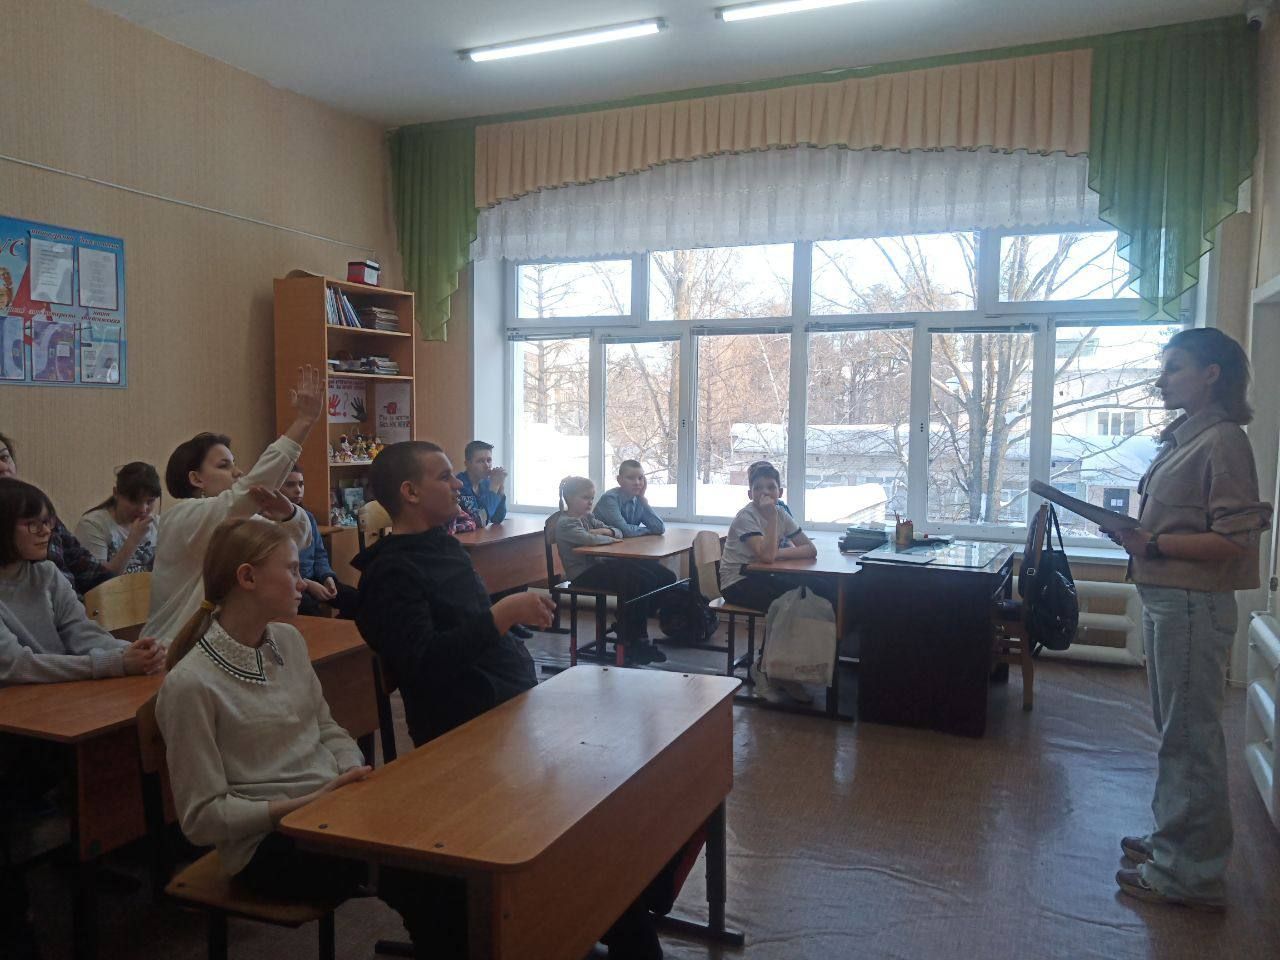 От основ избирательной системы до изучения семейного права.   В Ульяновской области проходит Декада правового просвещения молодёжи